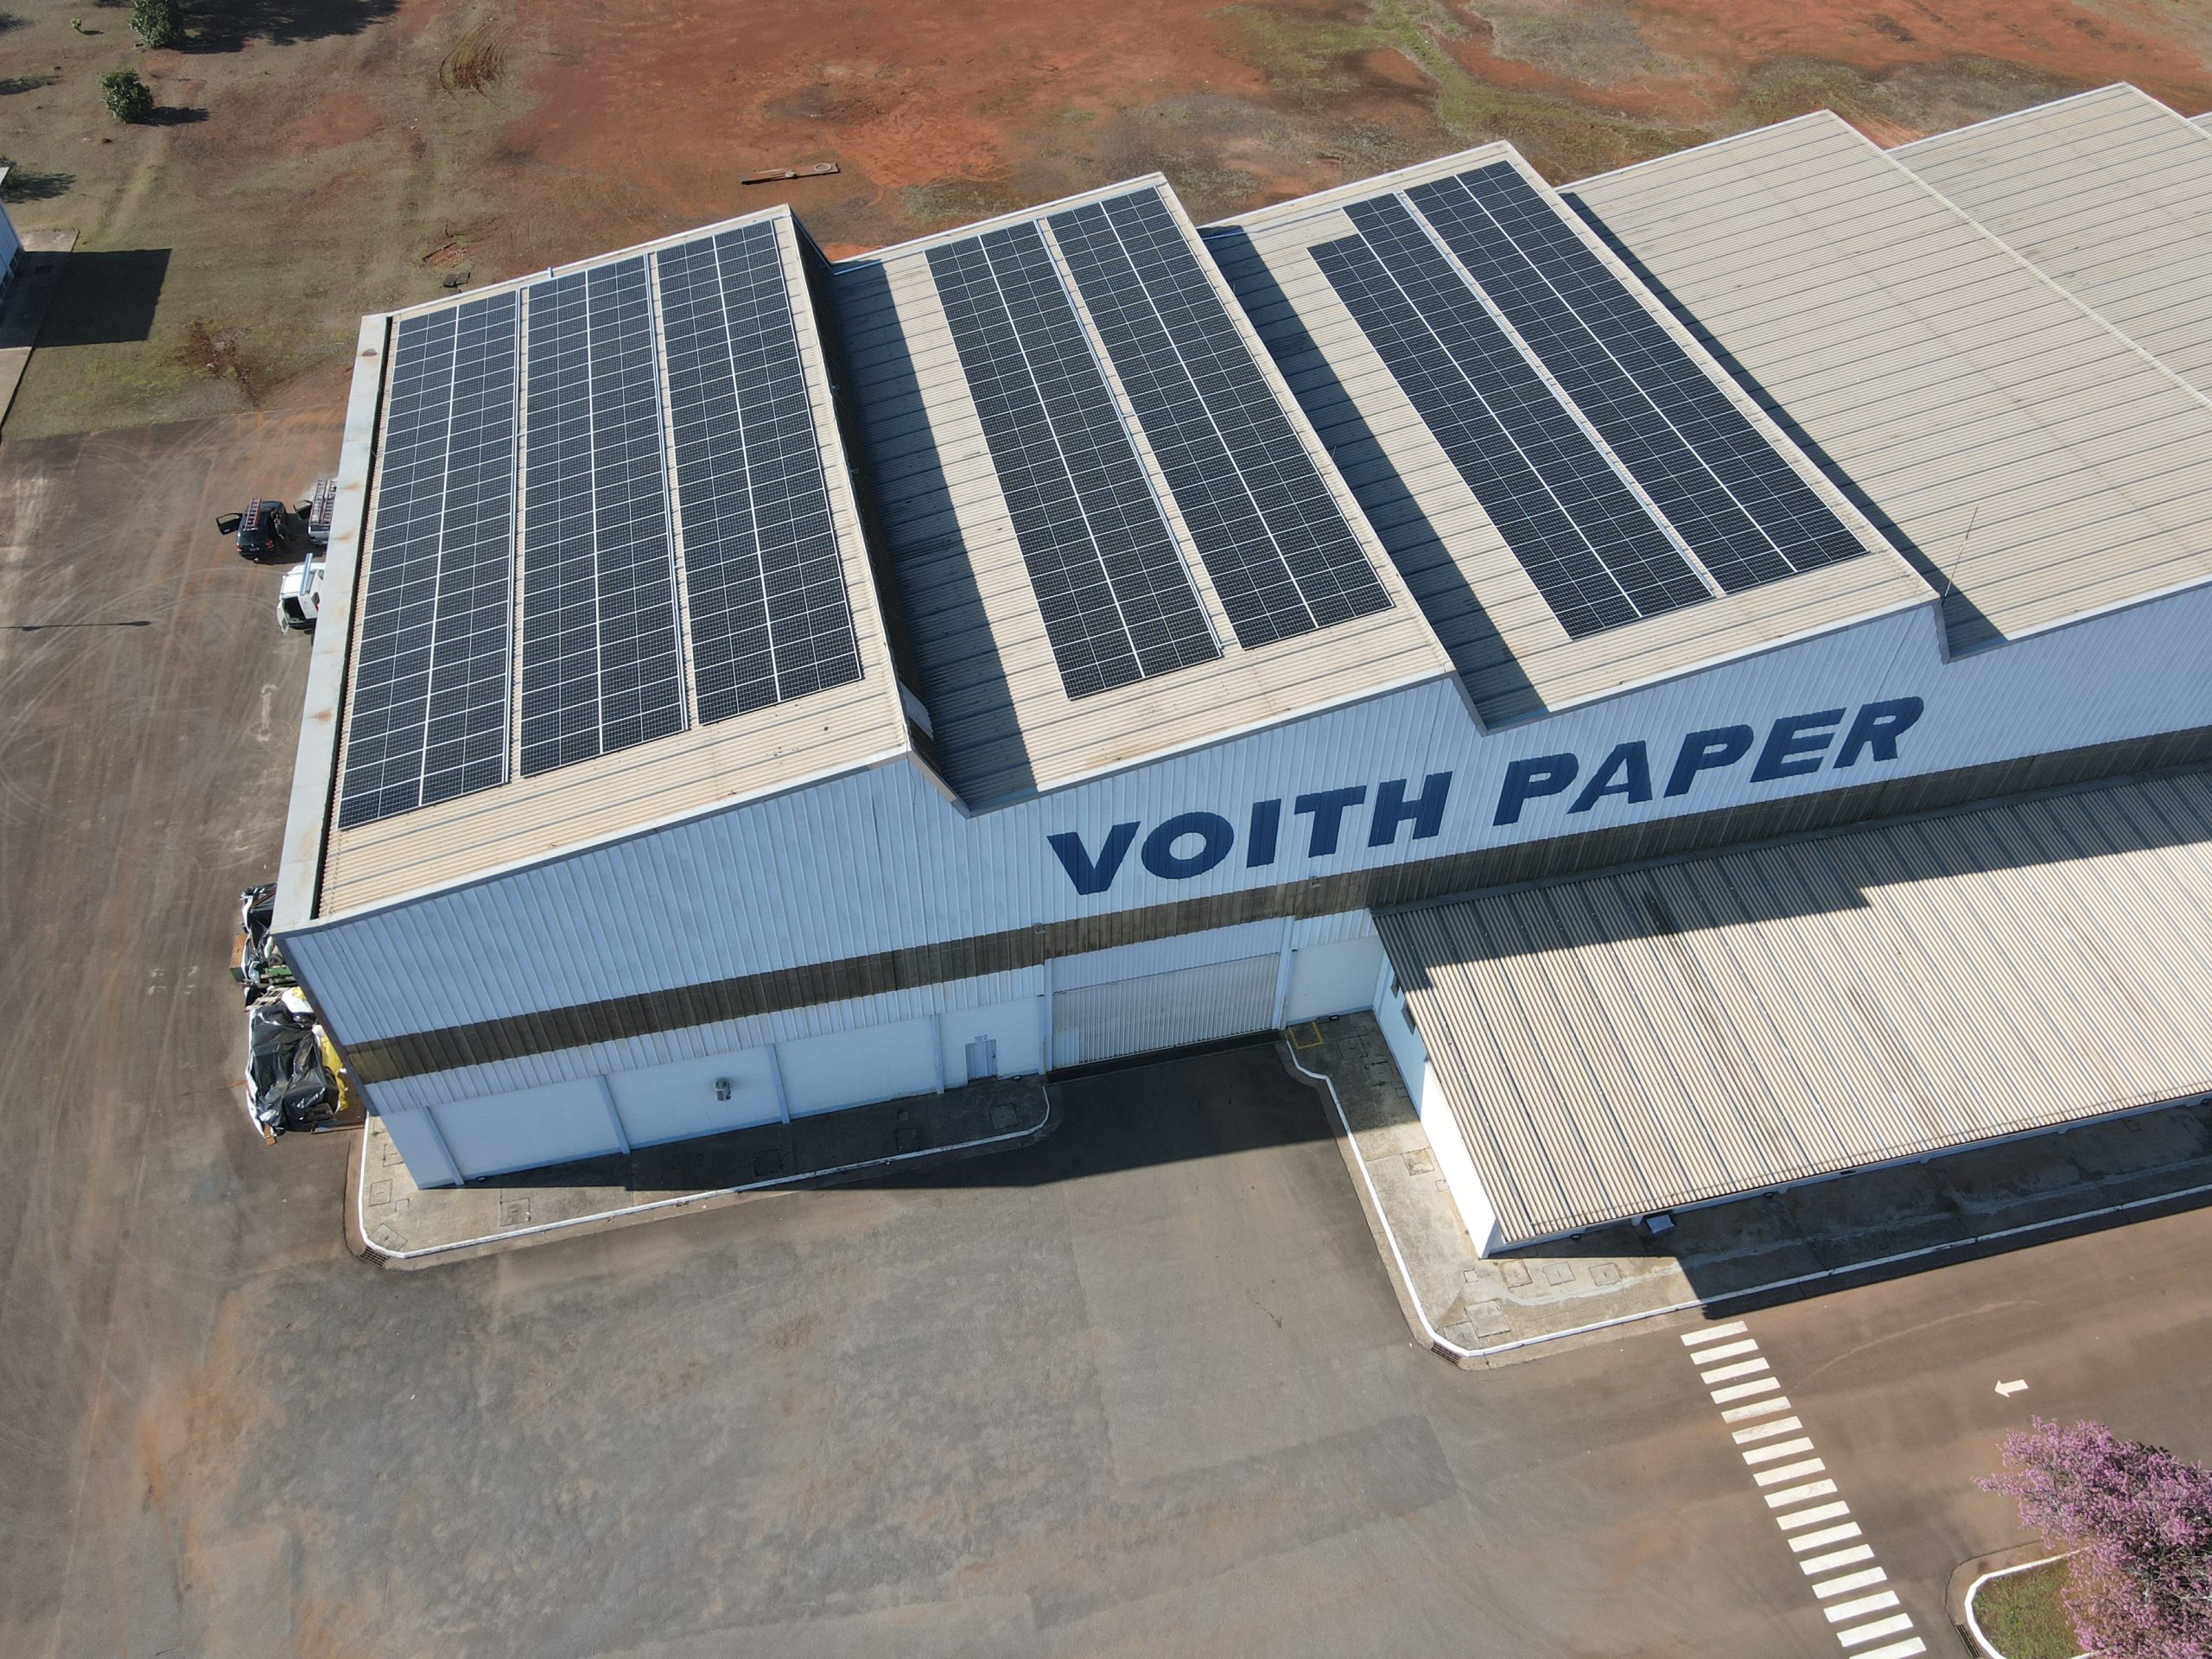 Voith Paper reforçar o seu compromisso para reduzir a emissão de CO2 no Brasil